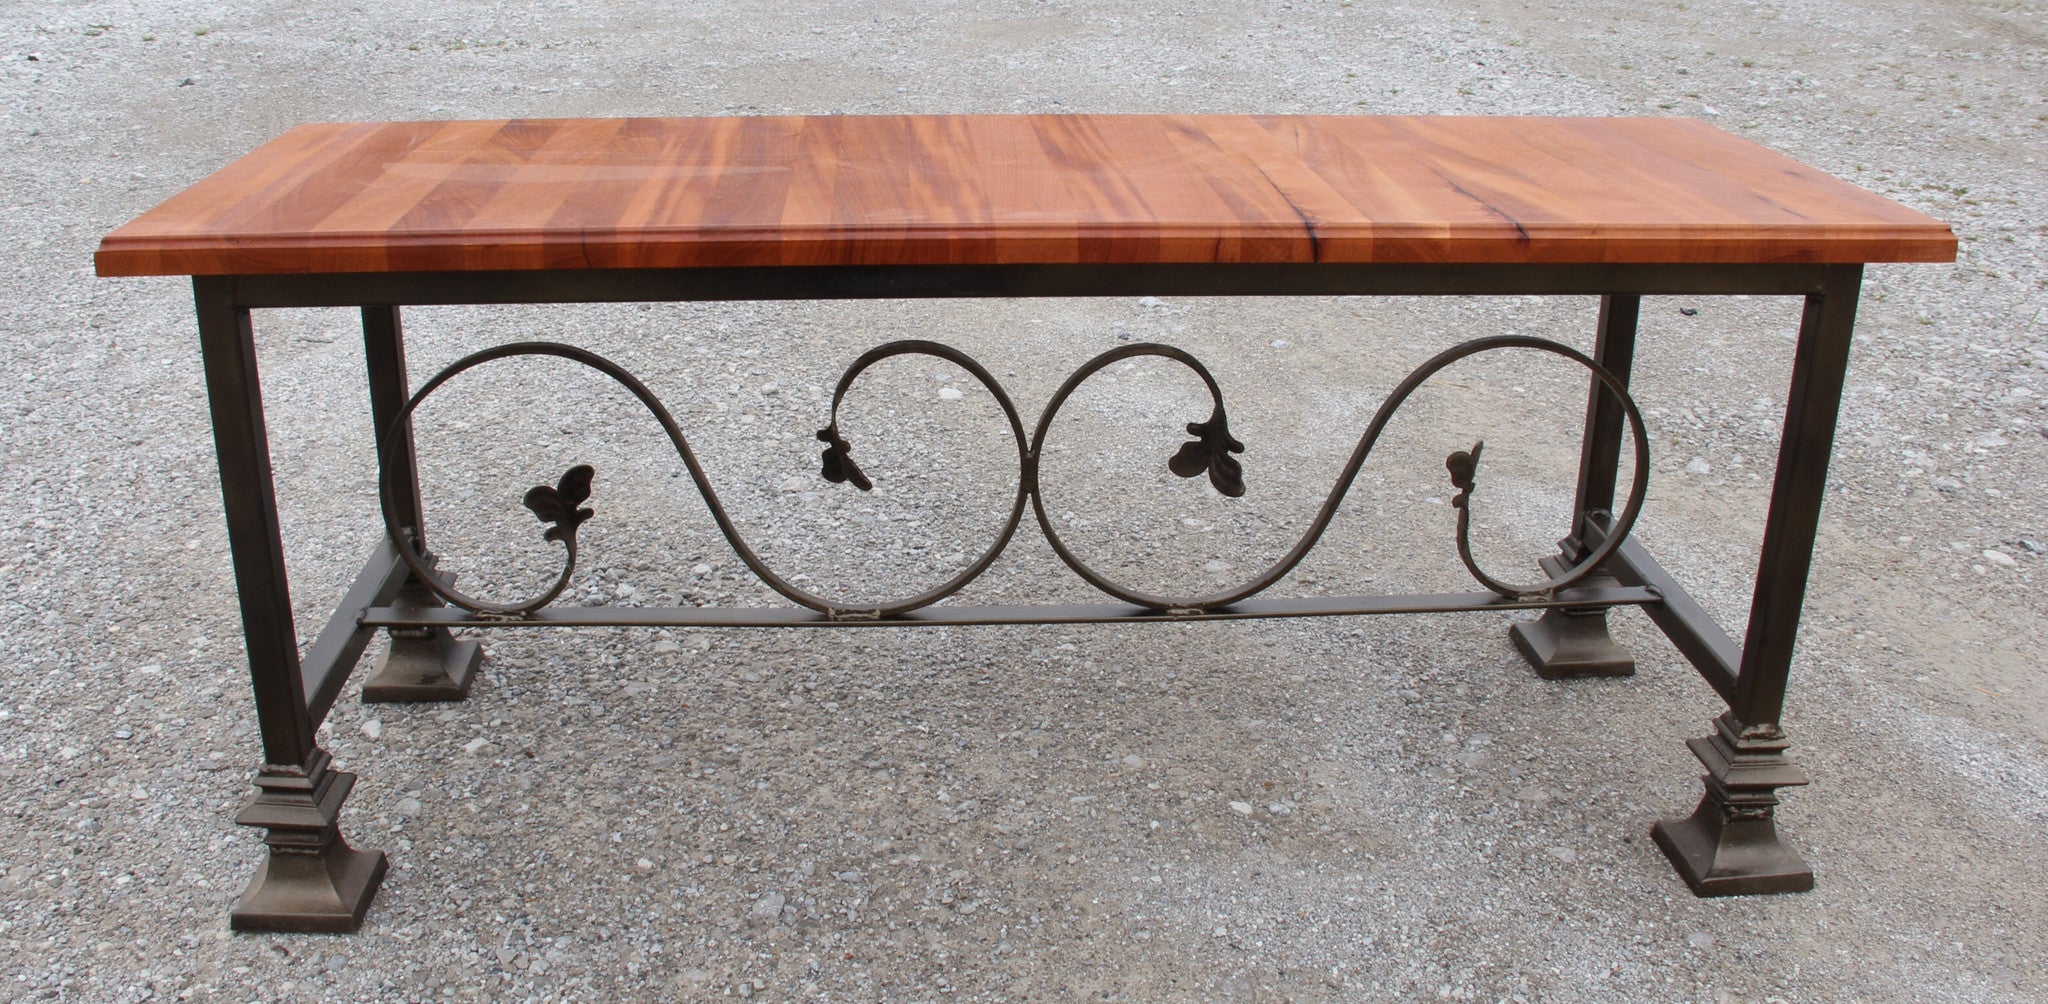 Bench-mahogany and wrought iron